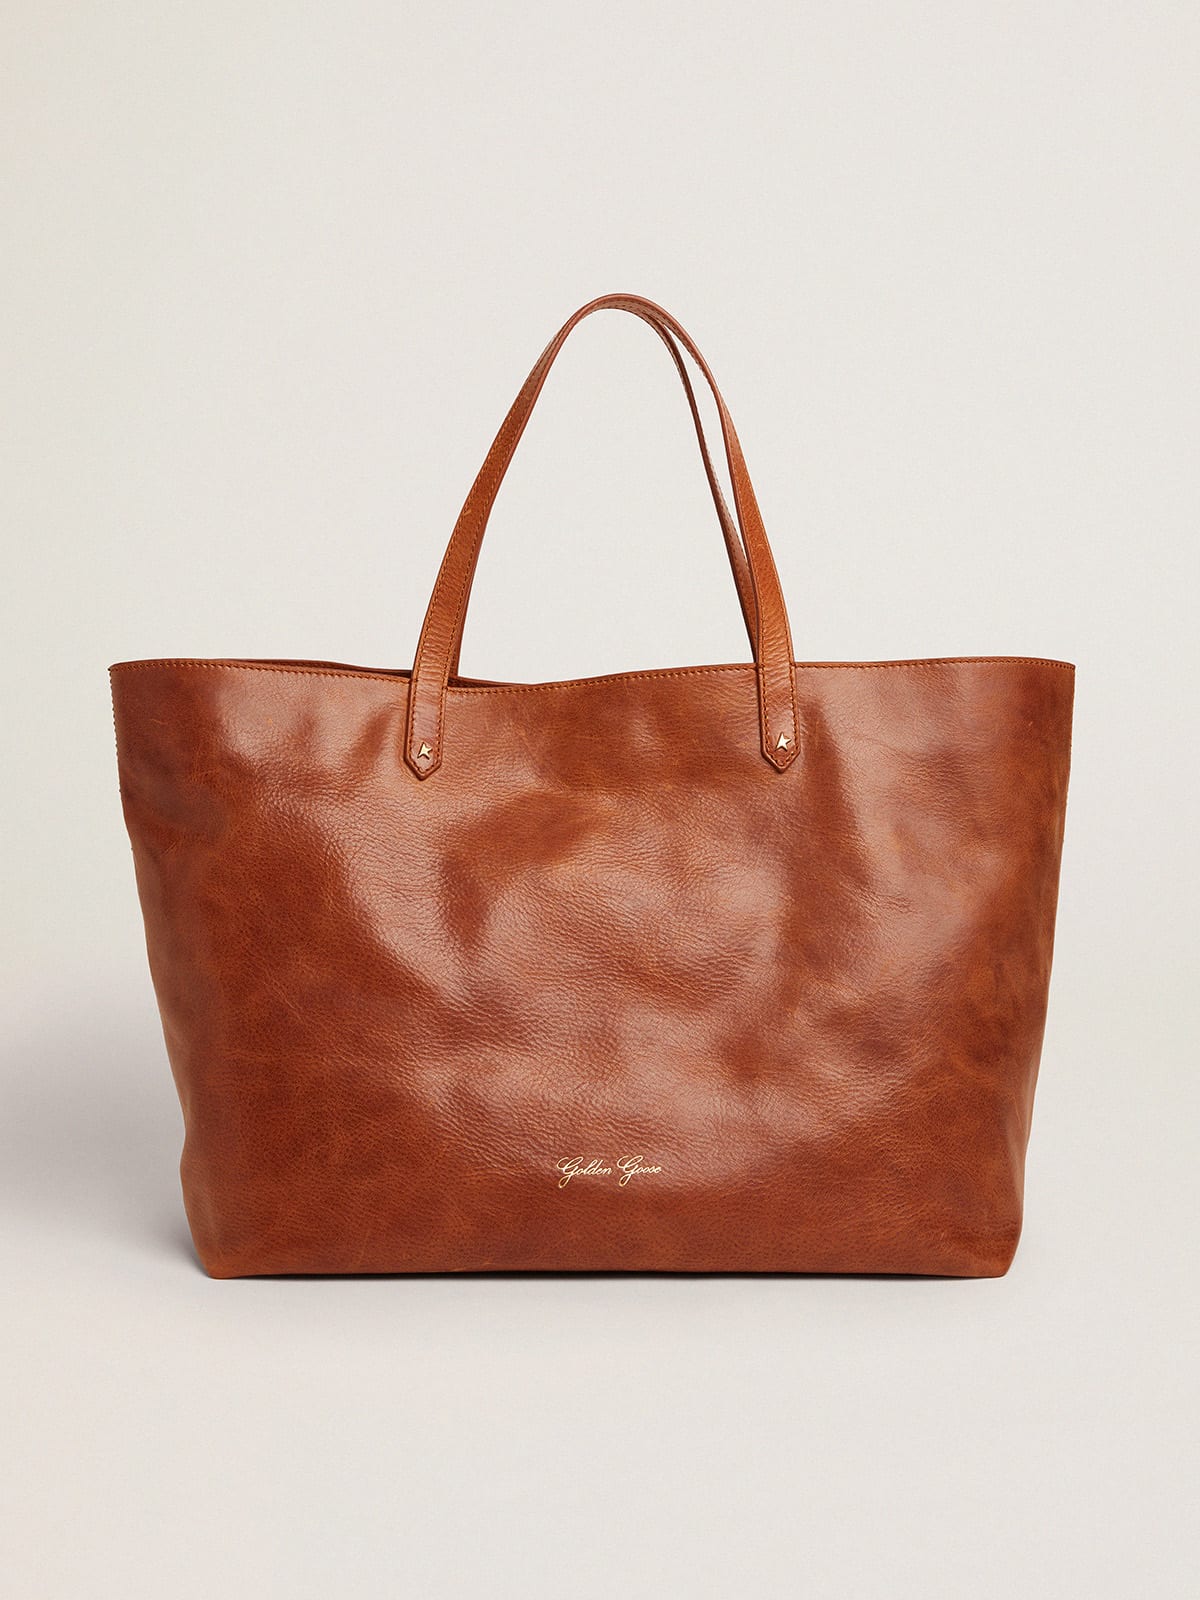 Golden Goose - Pasadena Bag en cuir brillant marron avec logo doré sur le devant in 